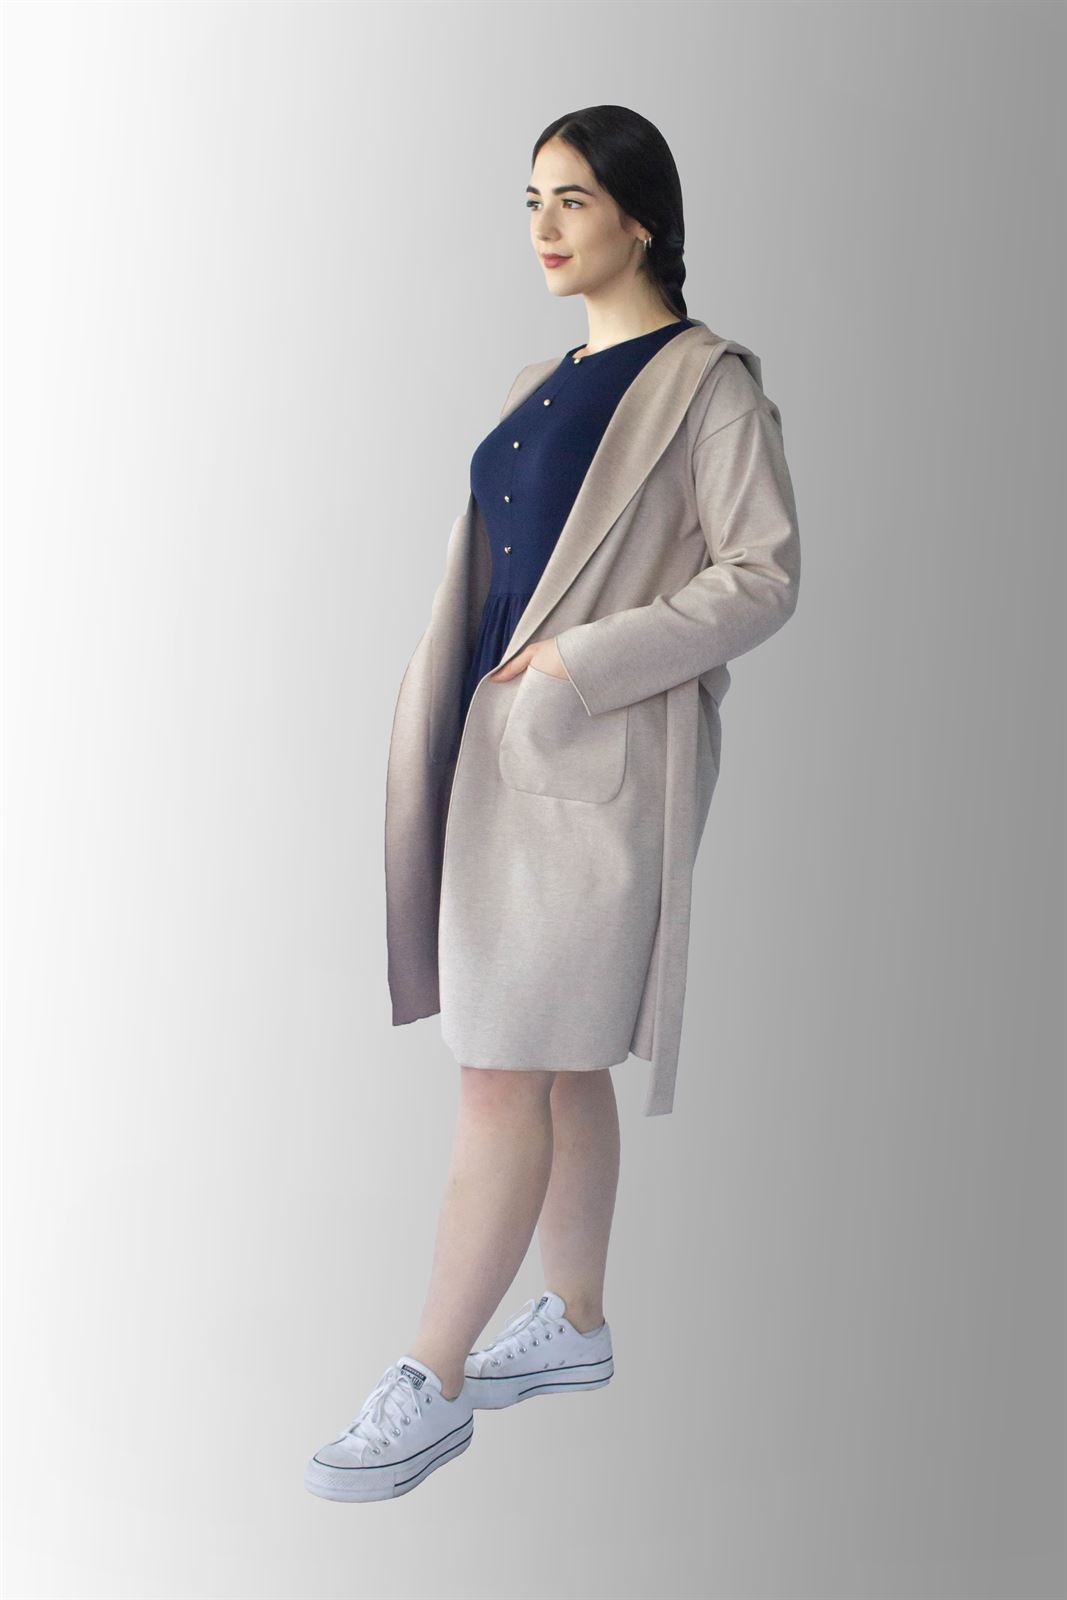 Abrigo Ámsterdam nena color caldero guardapolvos de punto lana elástico sin forrar estilo casual con capucha - Imagen 3